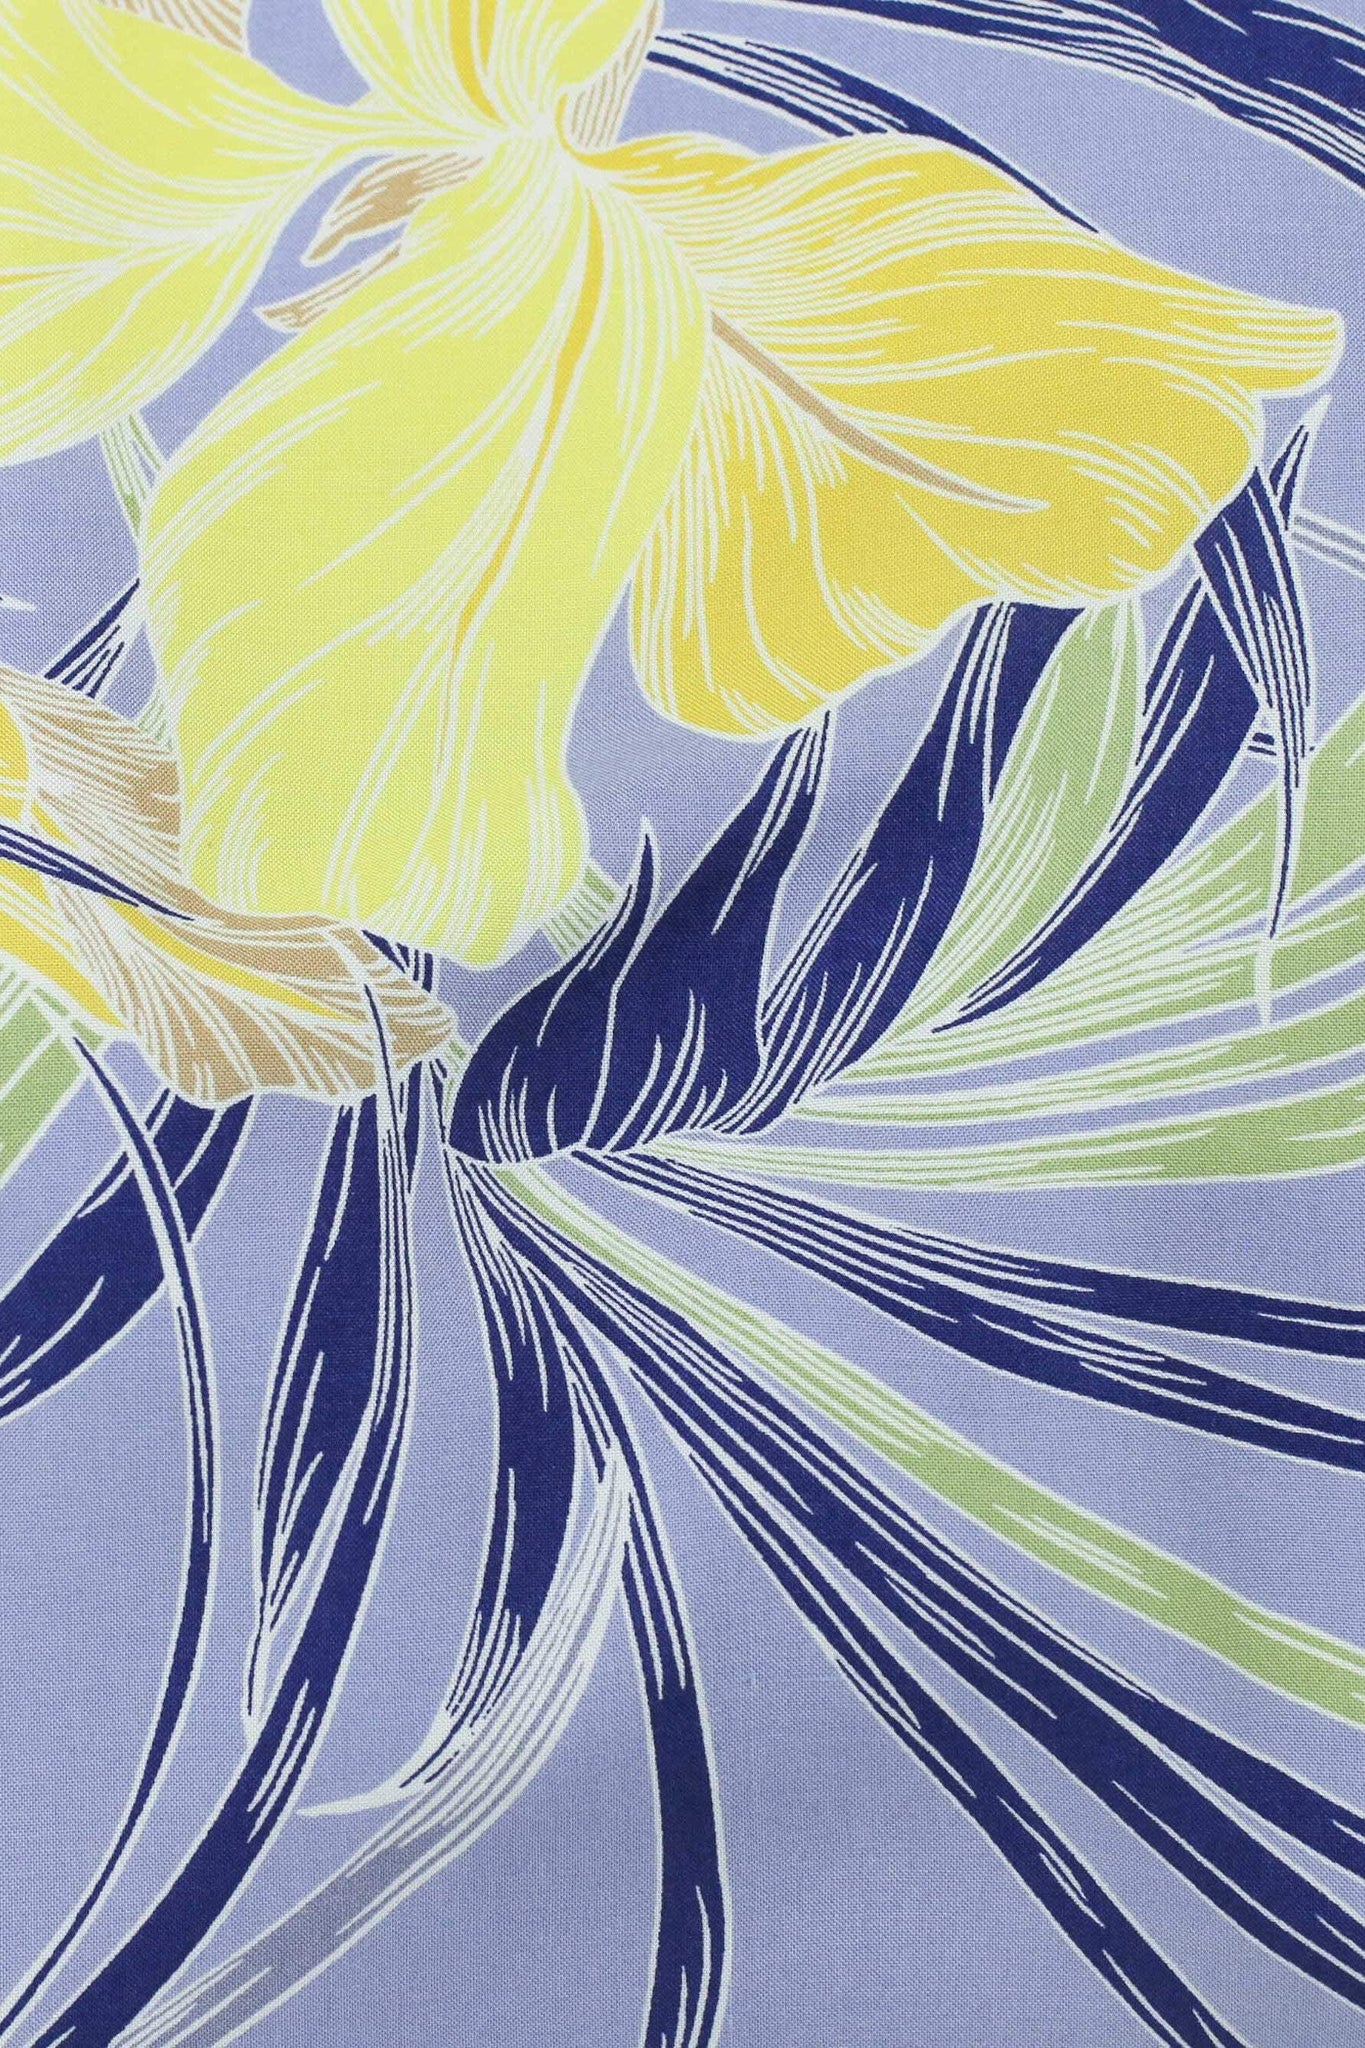 Sofia Iris Print Periwinkle / Yellow